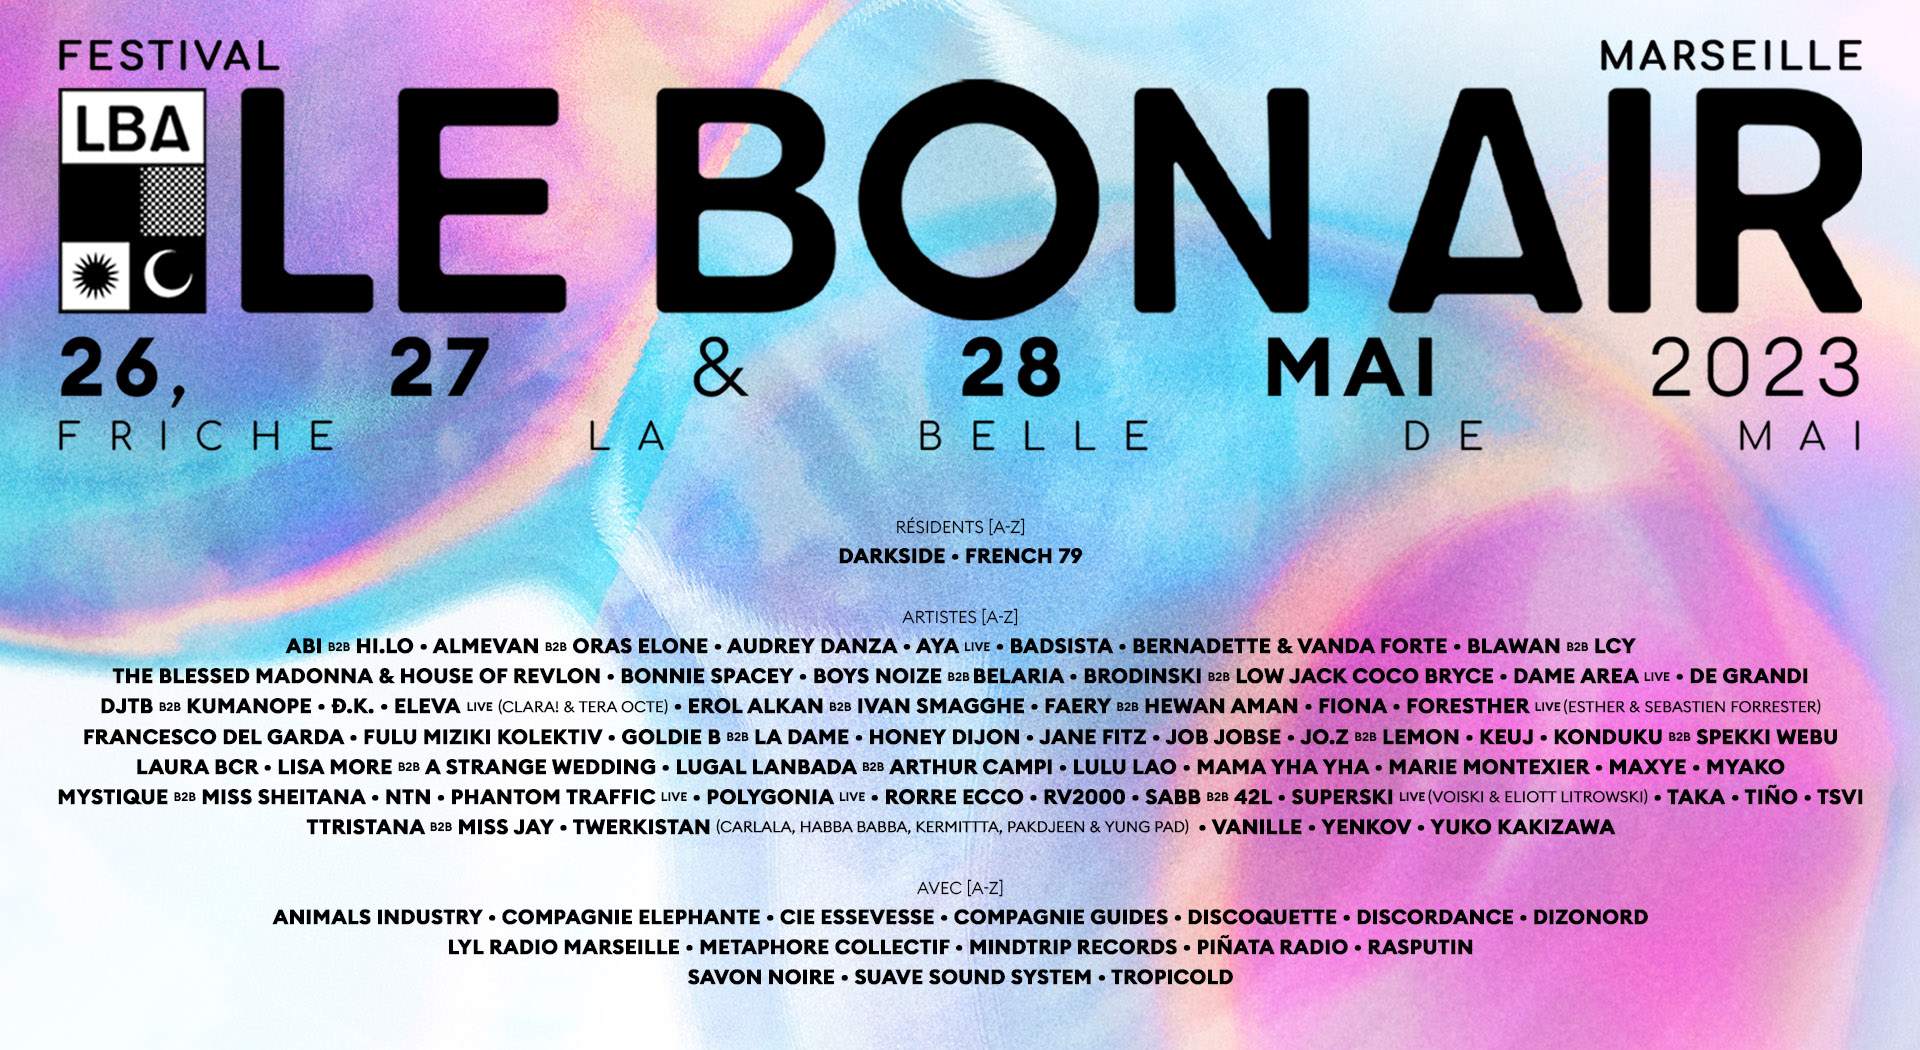 FESTIVAL LE BON AIR 2023 - フライヤー表